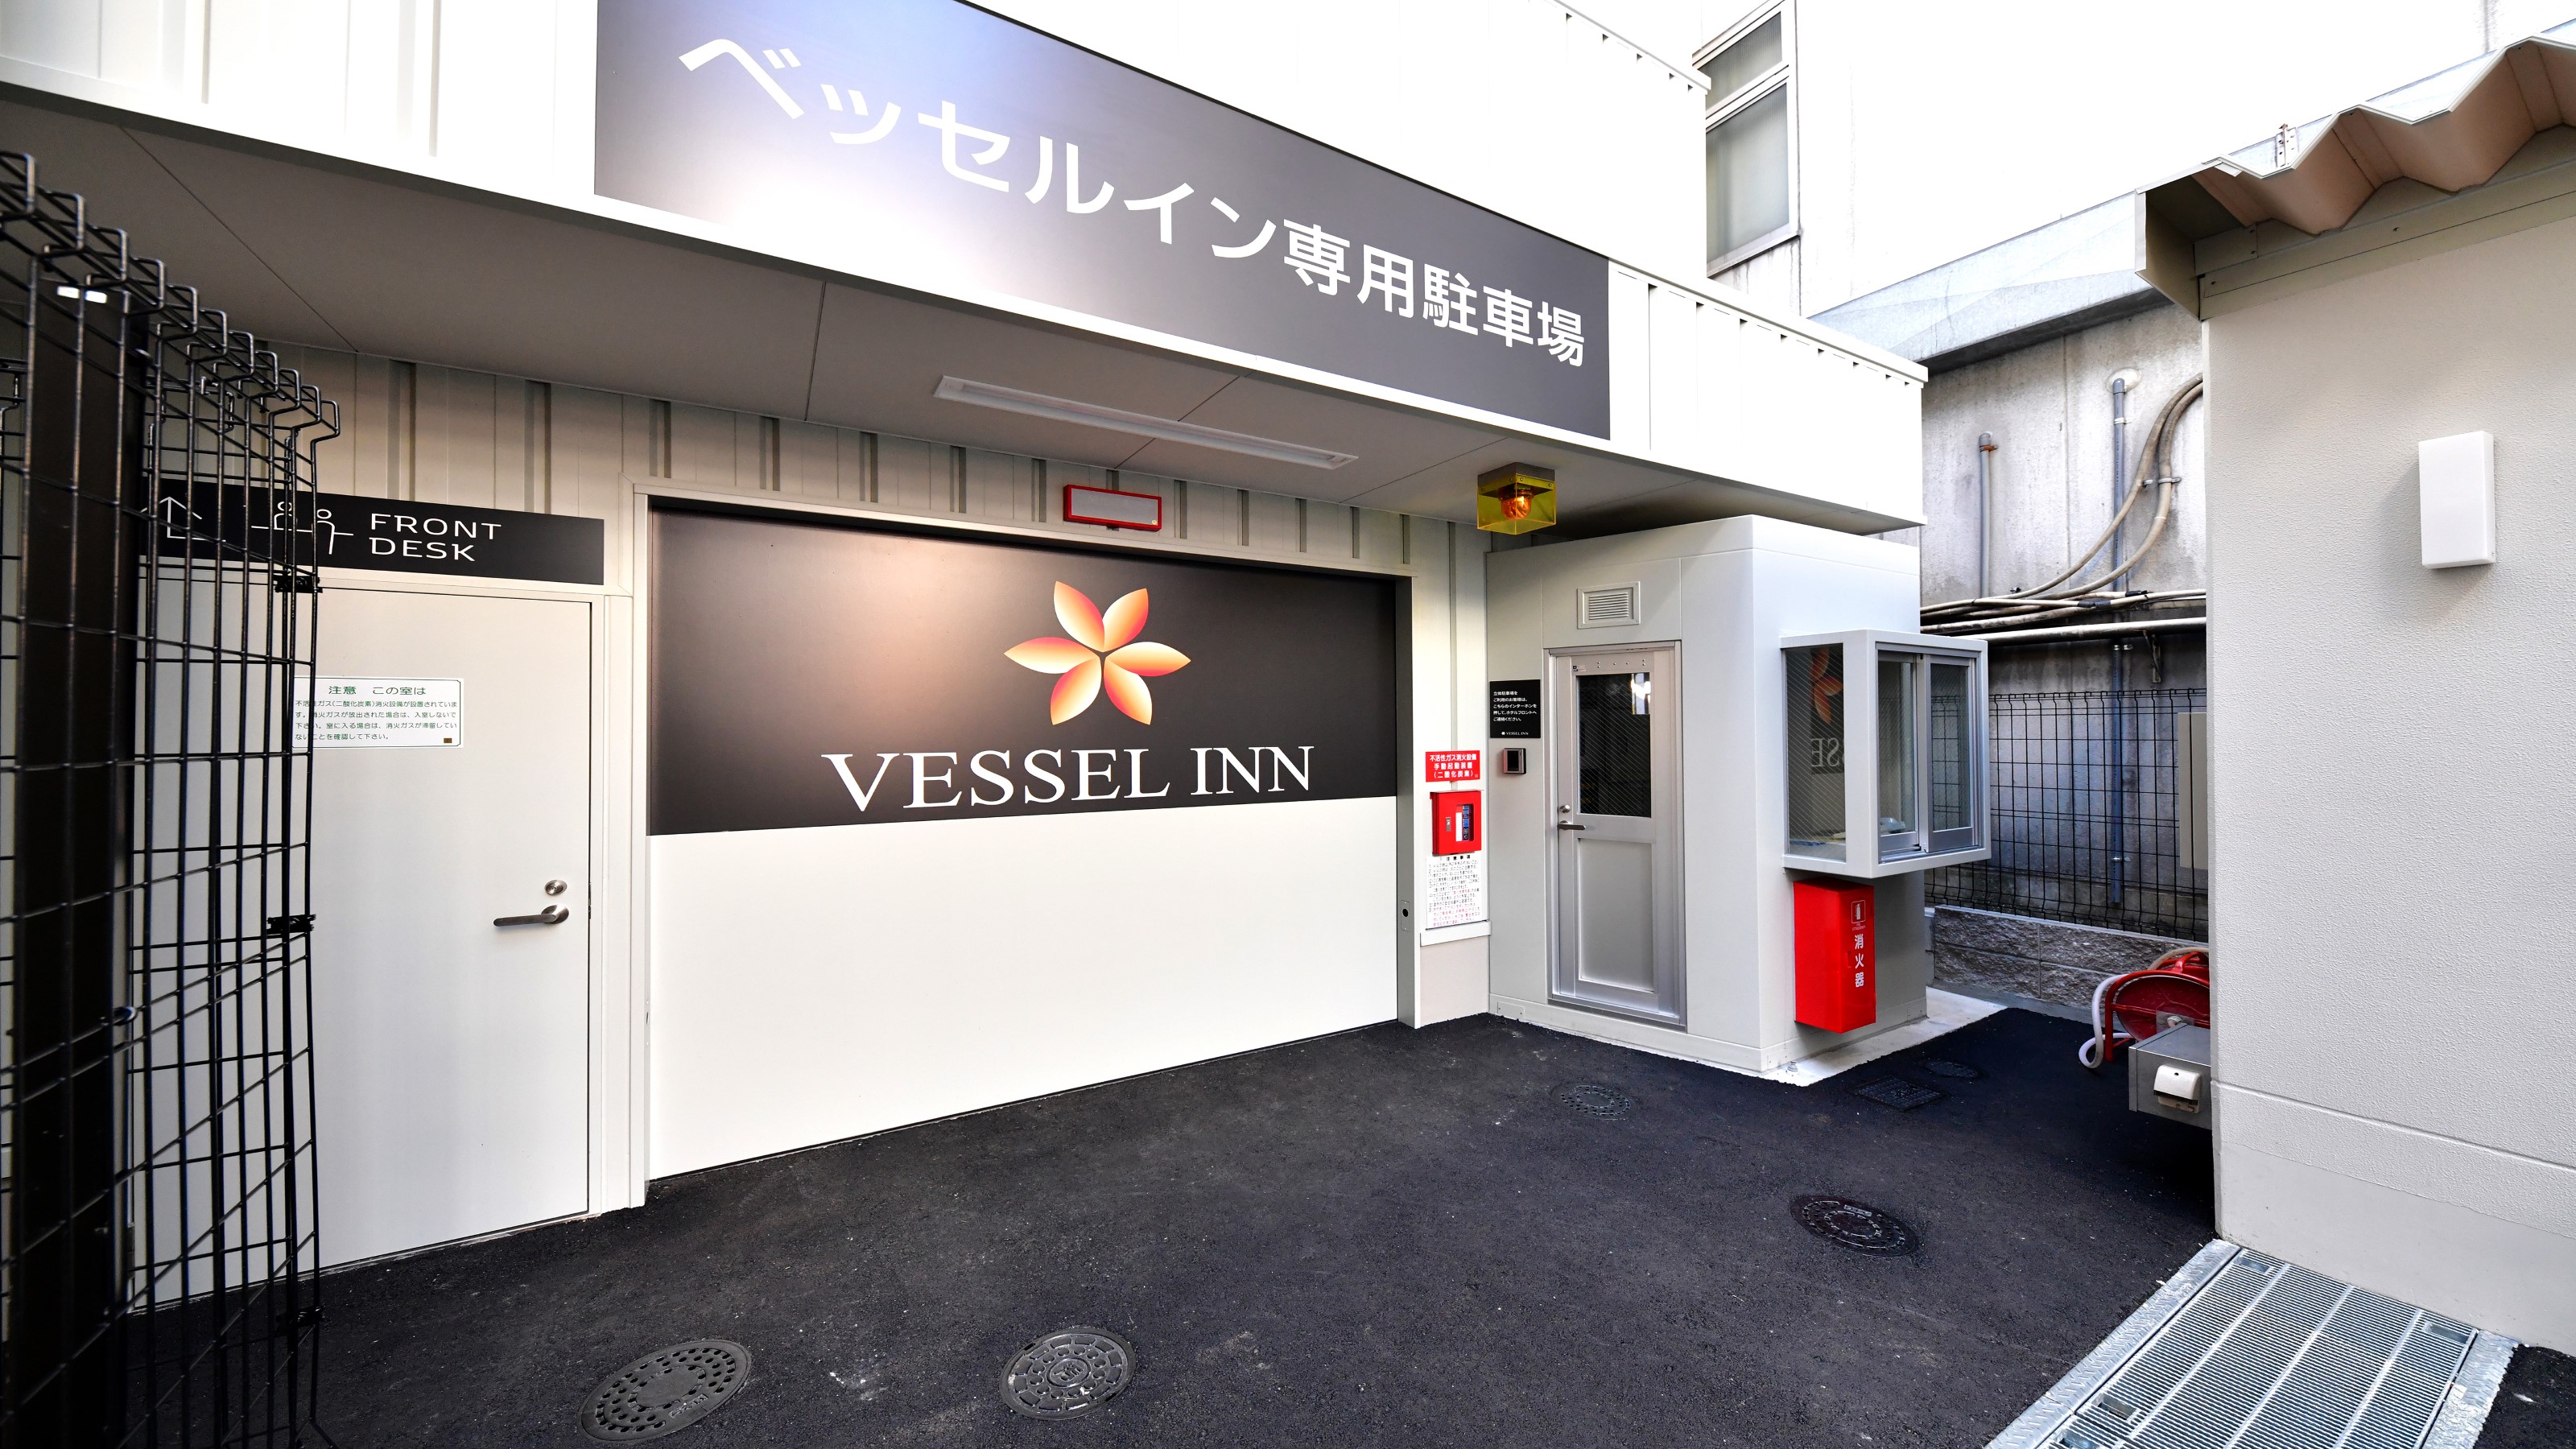 榮站前 Vessel Inn 飯店